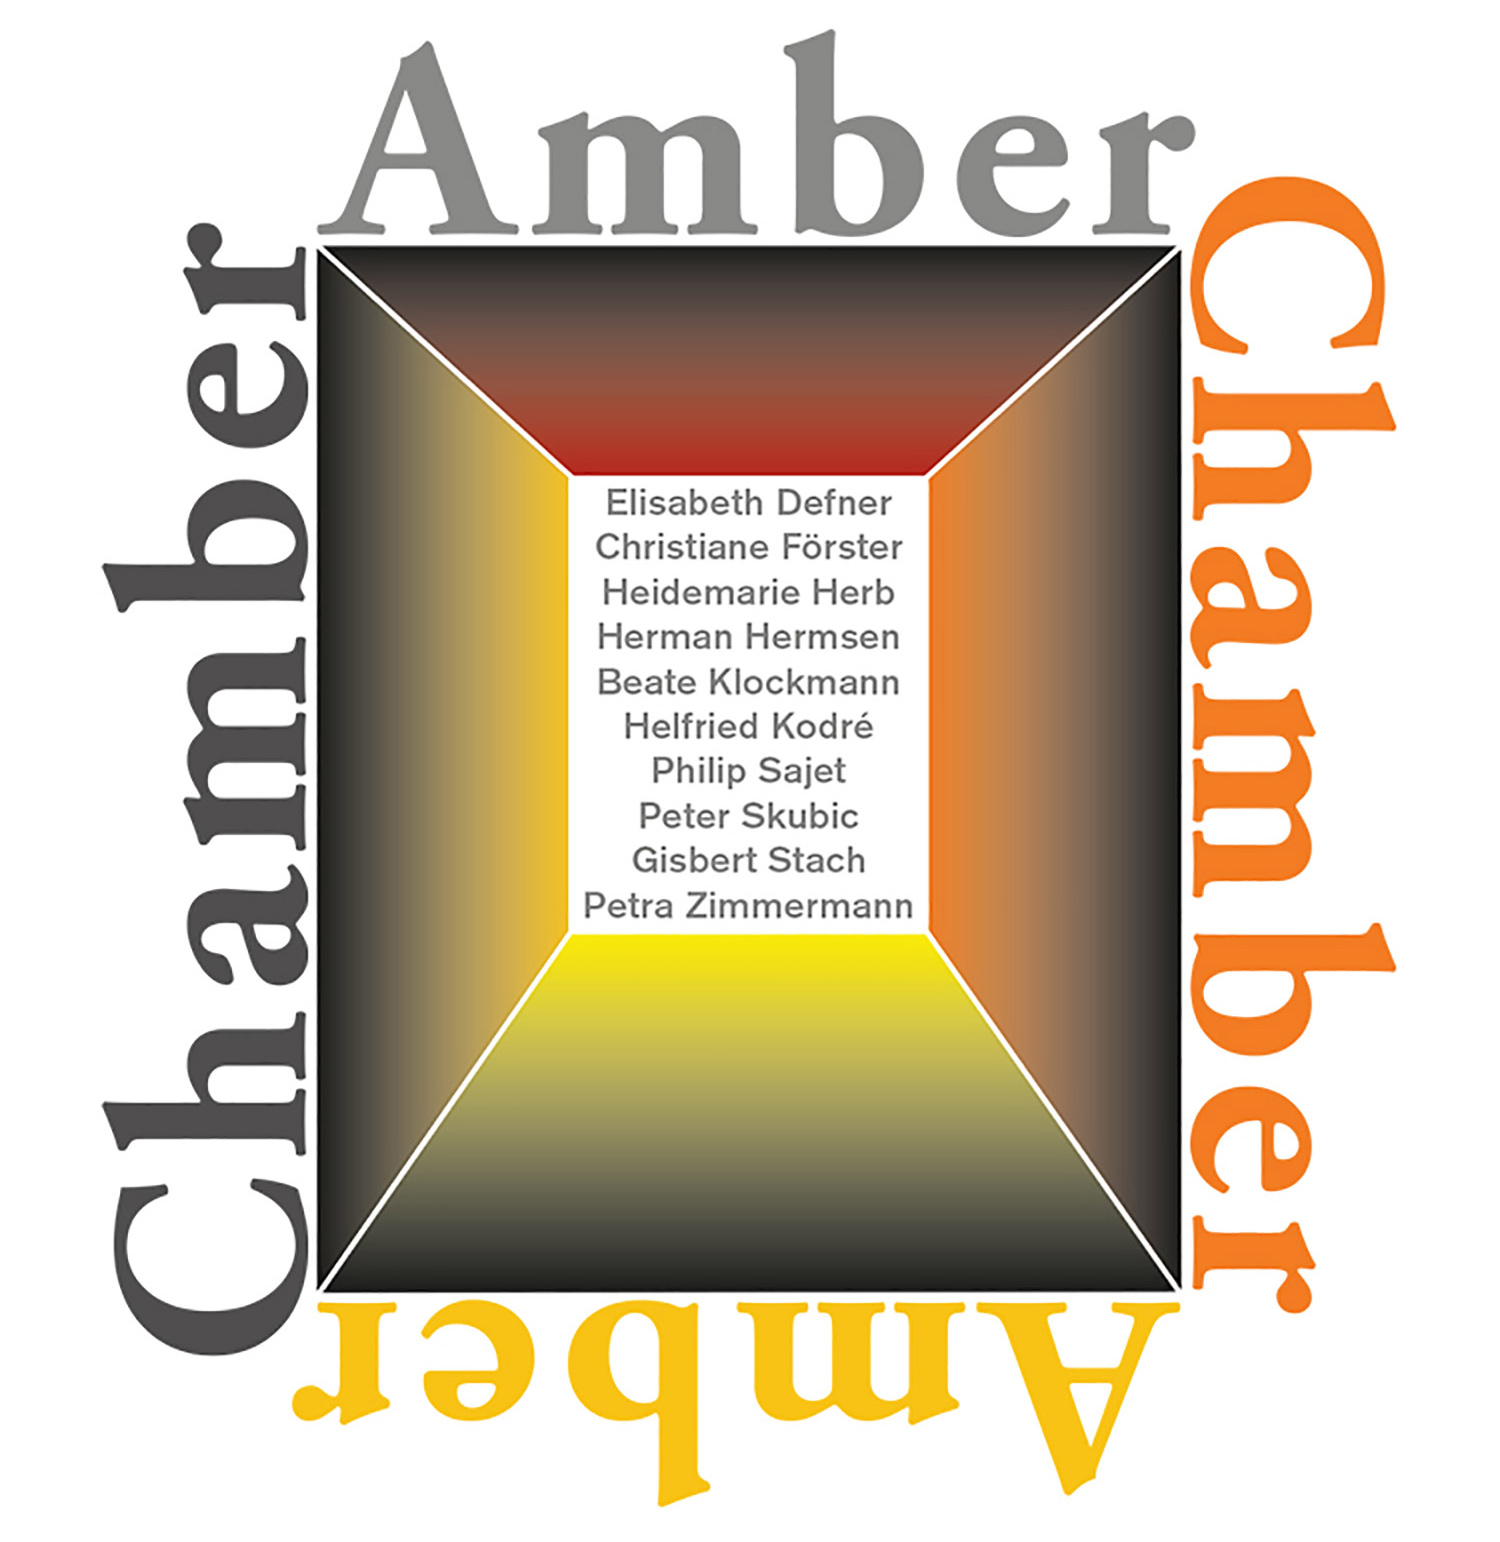 amber-chamber_gisbert_Stach